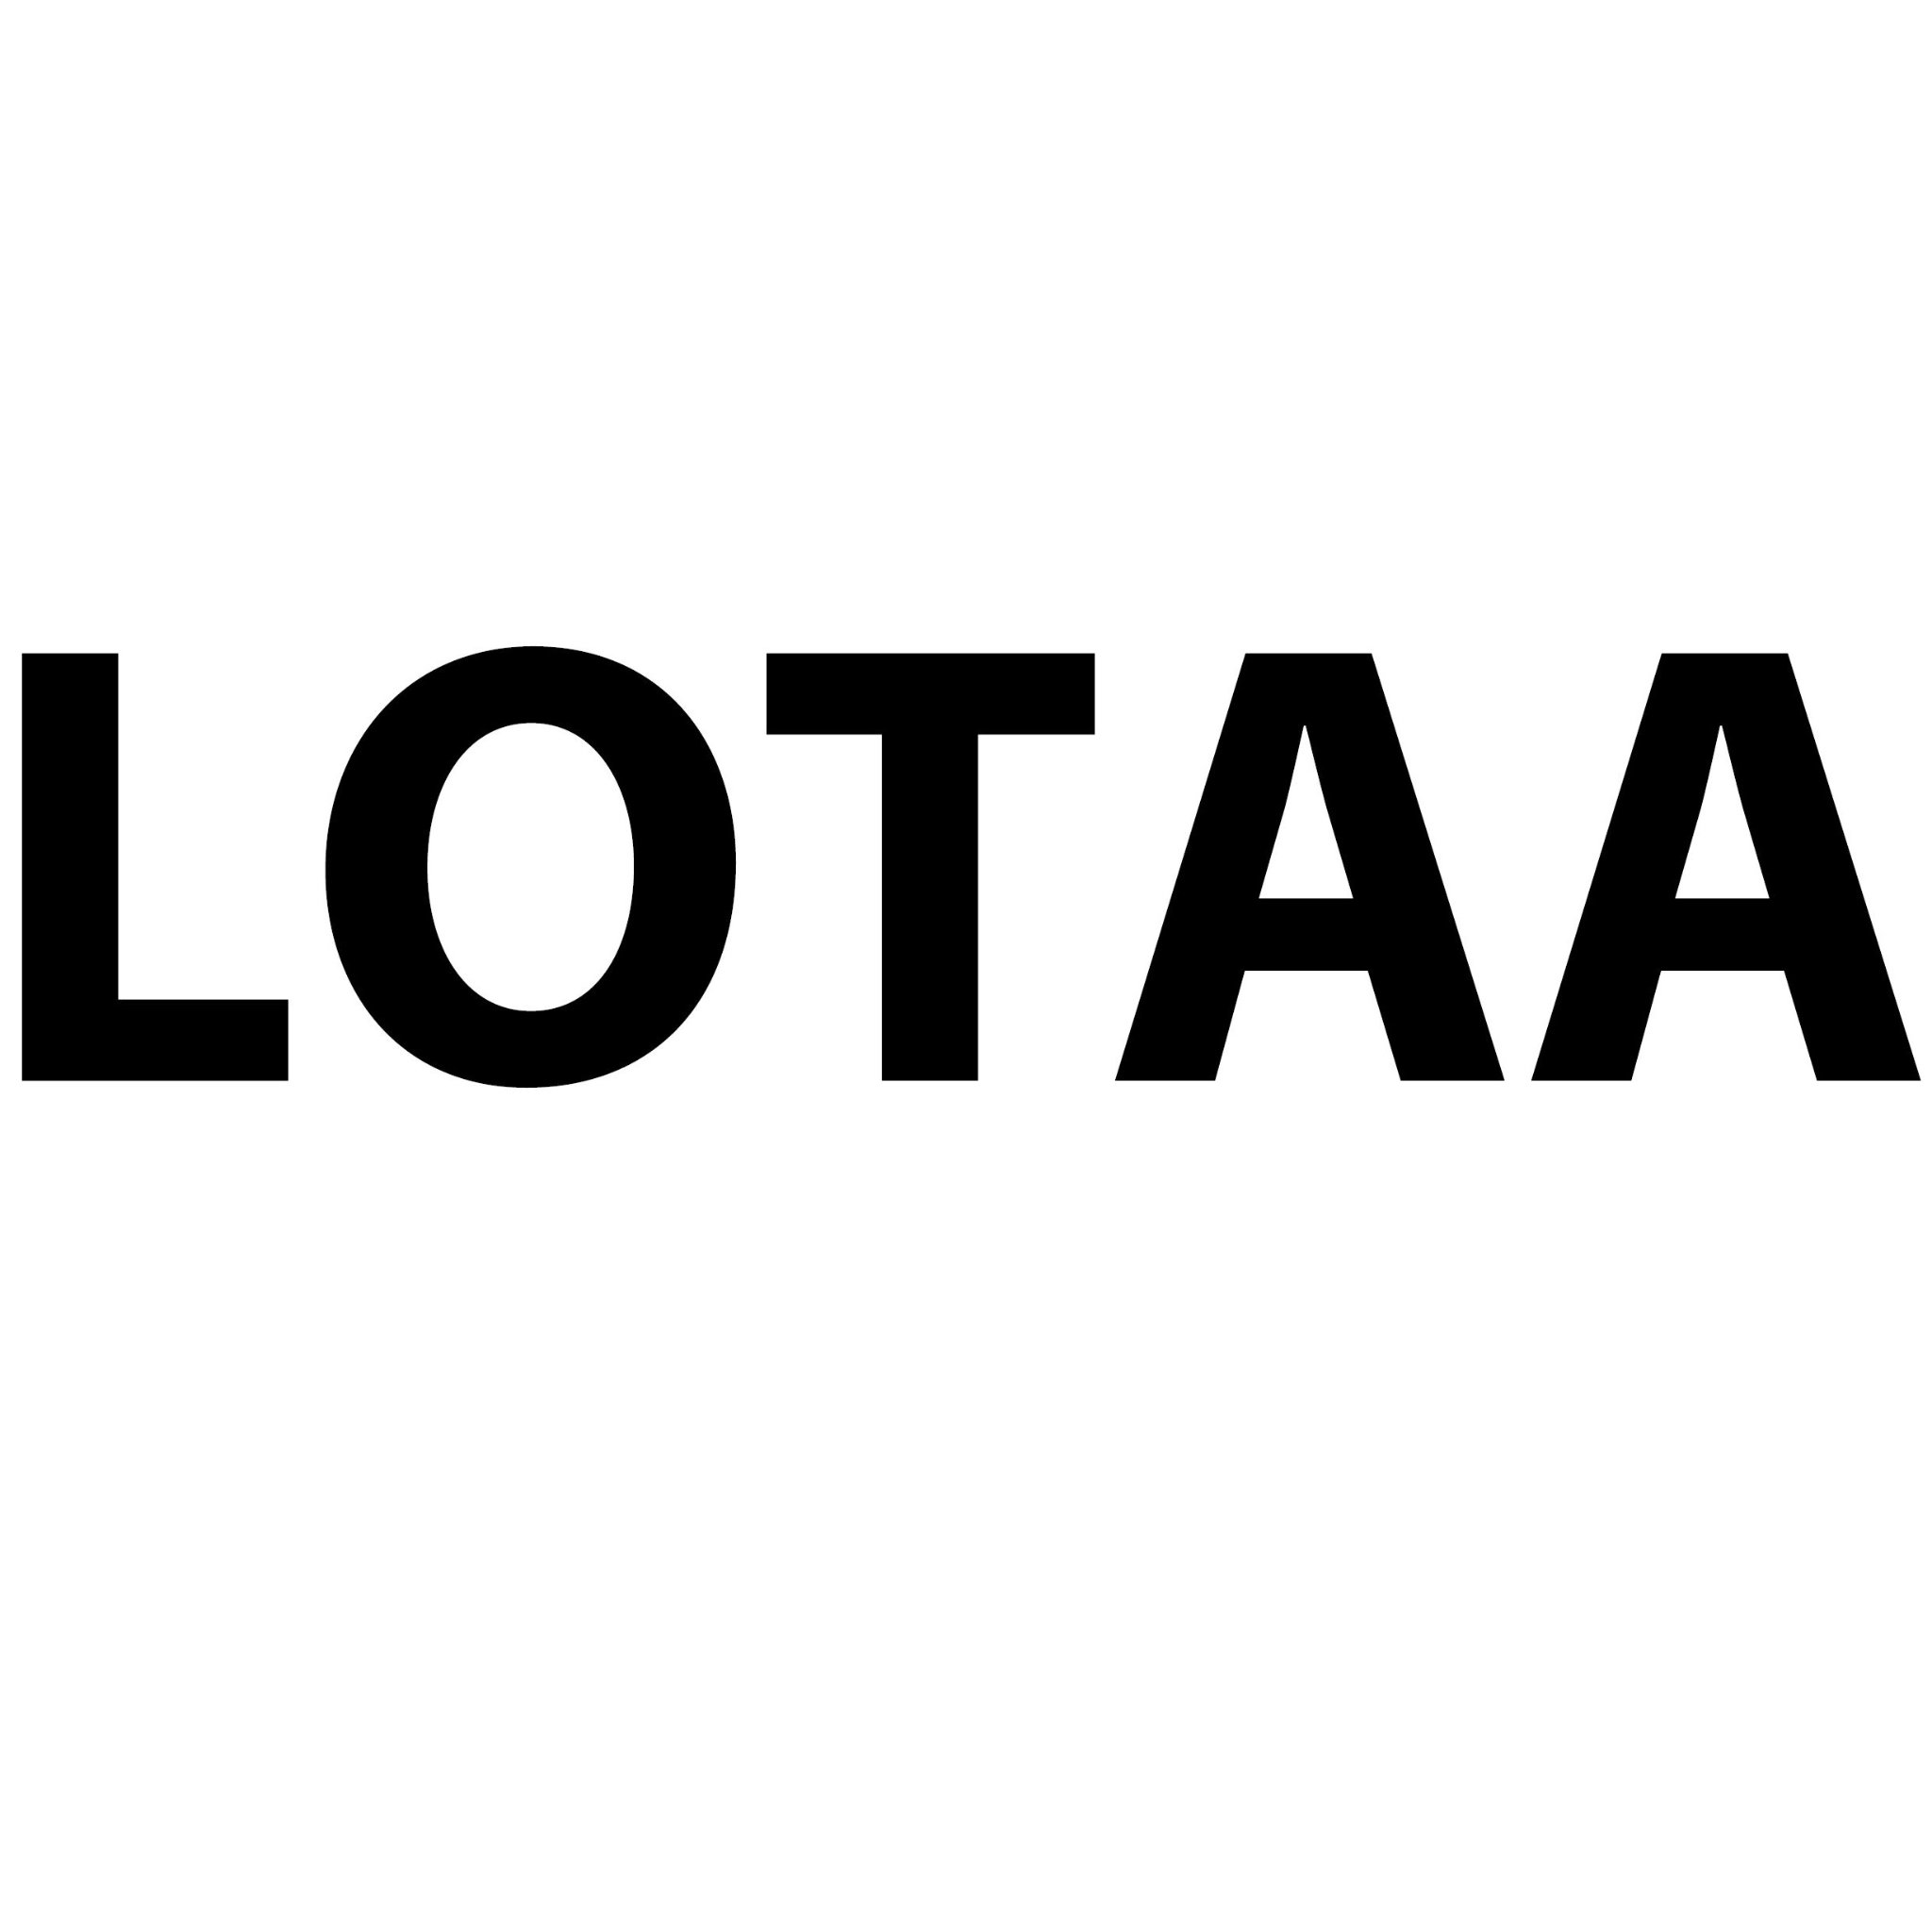 LOTAA ist eine Architekturmarke, unter der vollumfängliche wirtschaftliche und architektonische Qualität verstanden wird.
https://t.co/WWrP7GbZxv 🌁